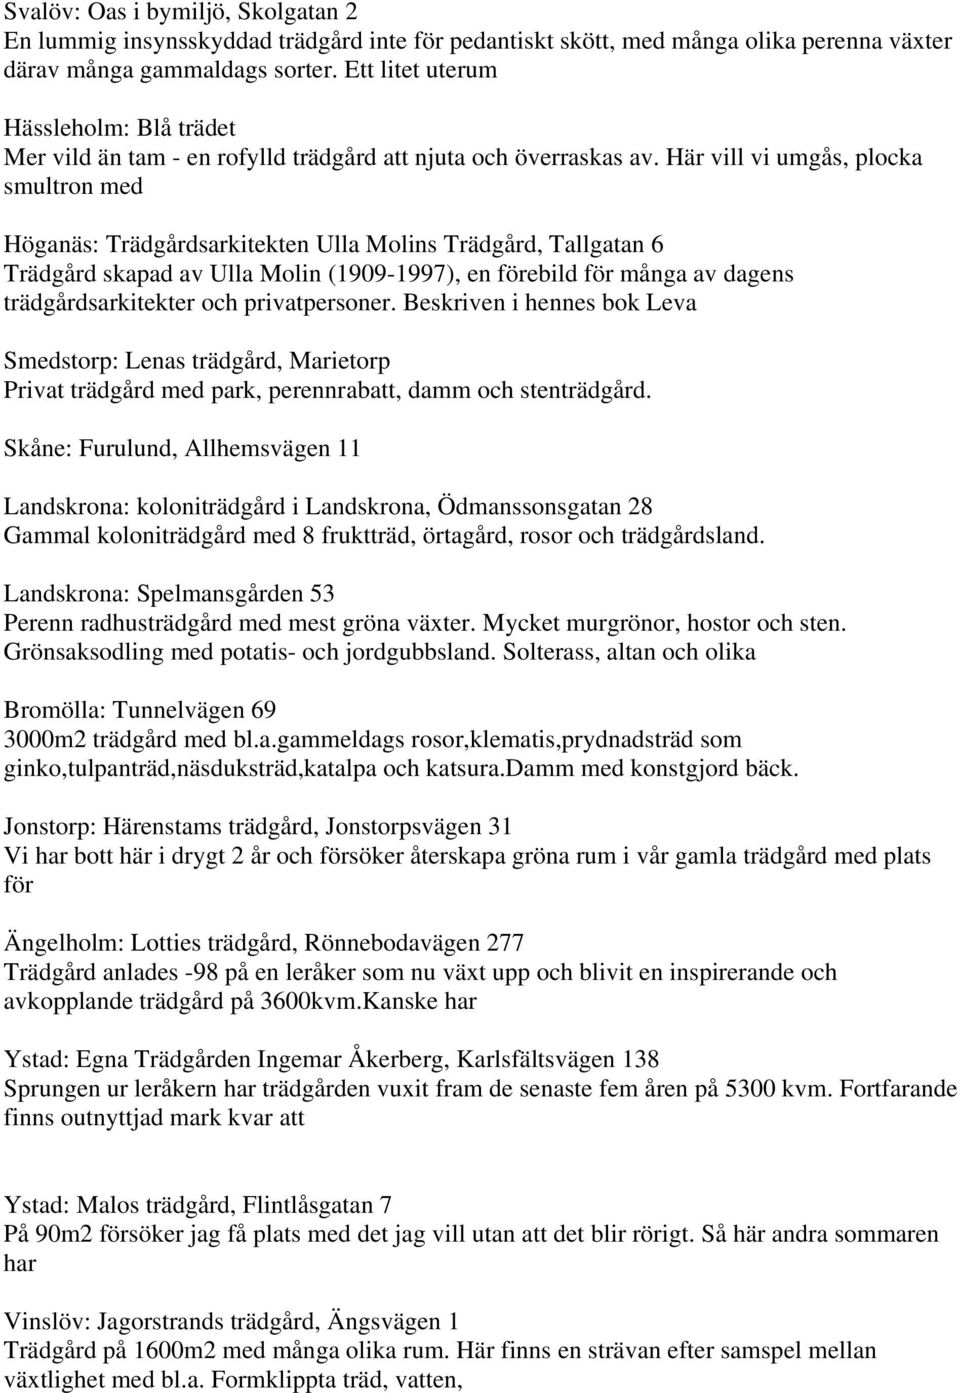 Här vill vi umgås, plocka smultron med Höganäs: Trädgårdsarkitekten Ulla Molins Trädgård, Tallgatan 6 Trädgård skapad av Ulla Molin (1909-1997), en förebild för många av dagens trädgårdsarkitekter